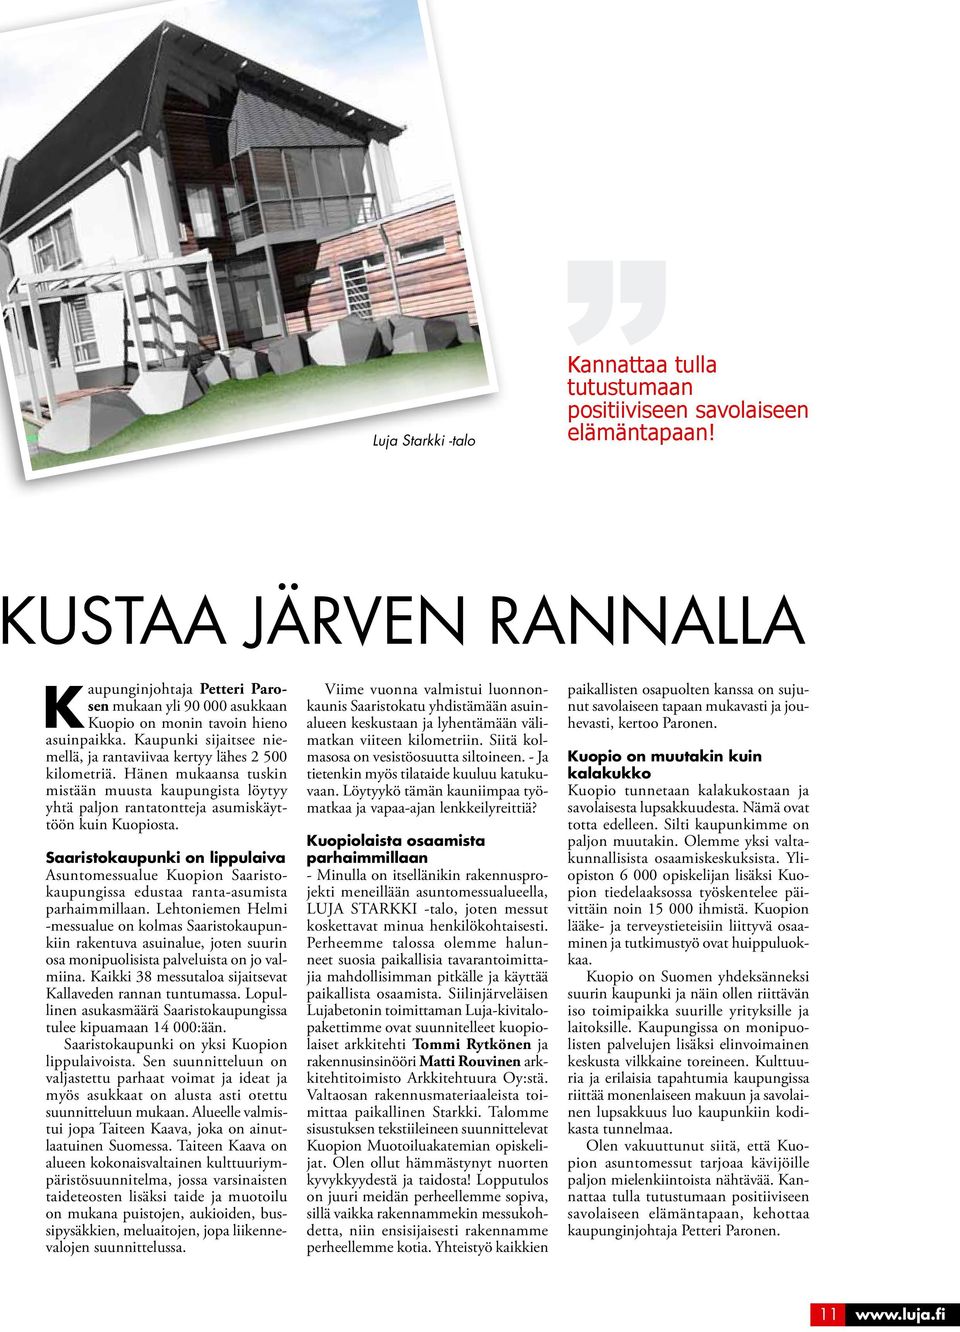 Hänen mukaansa tuskin mistään muusta kaupungista löytyy yhtä paljon rantatontteja asumiskäyttöön kuin Kuopiosta.